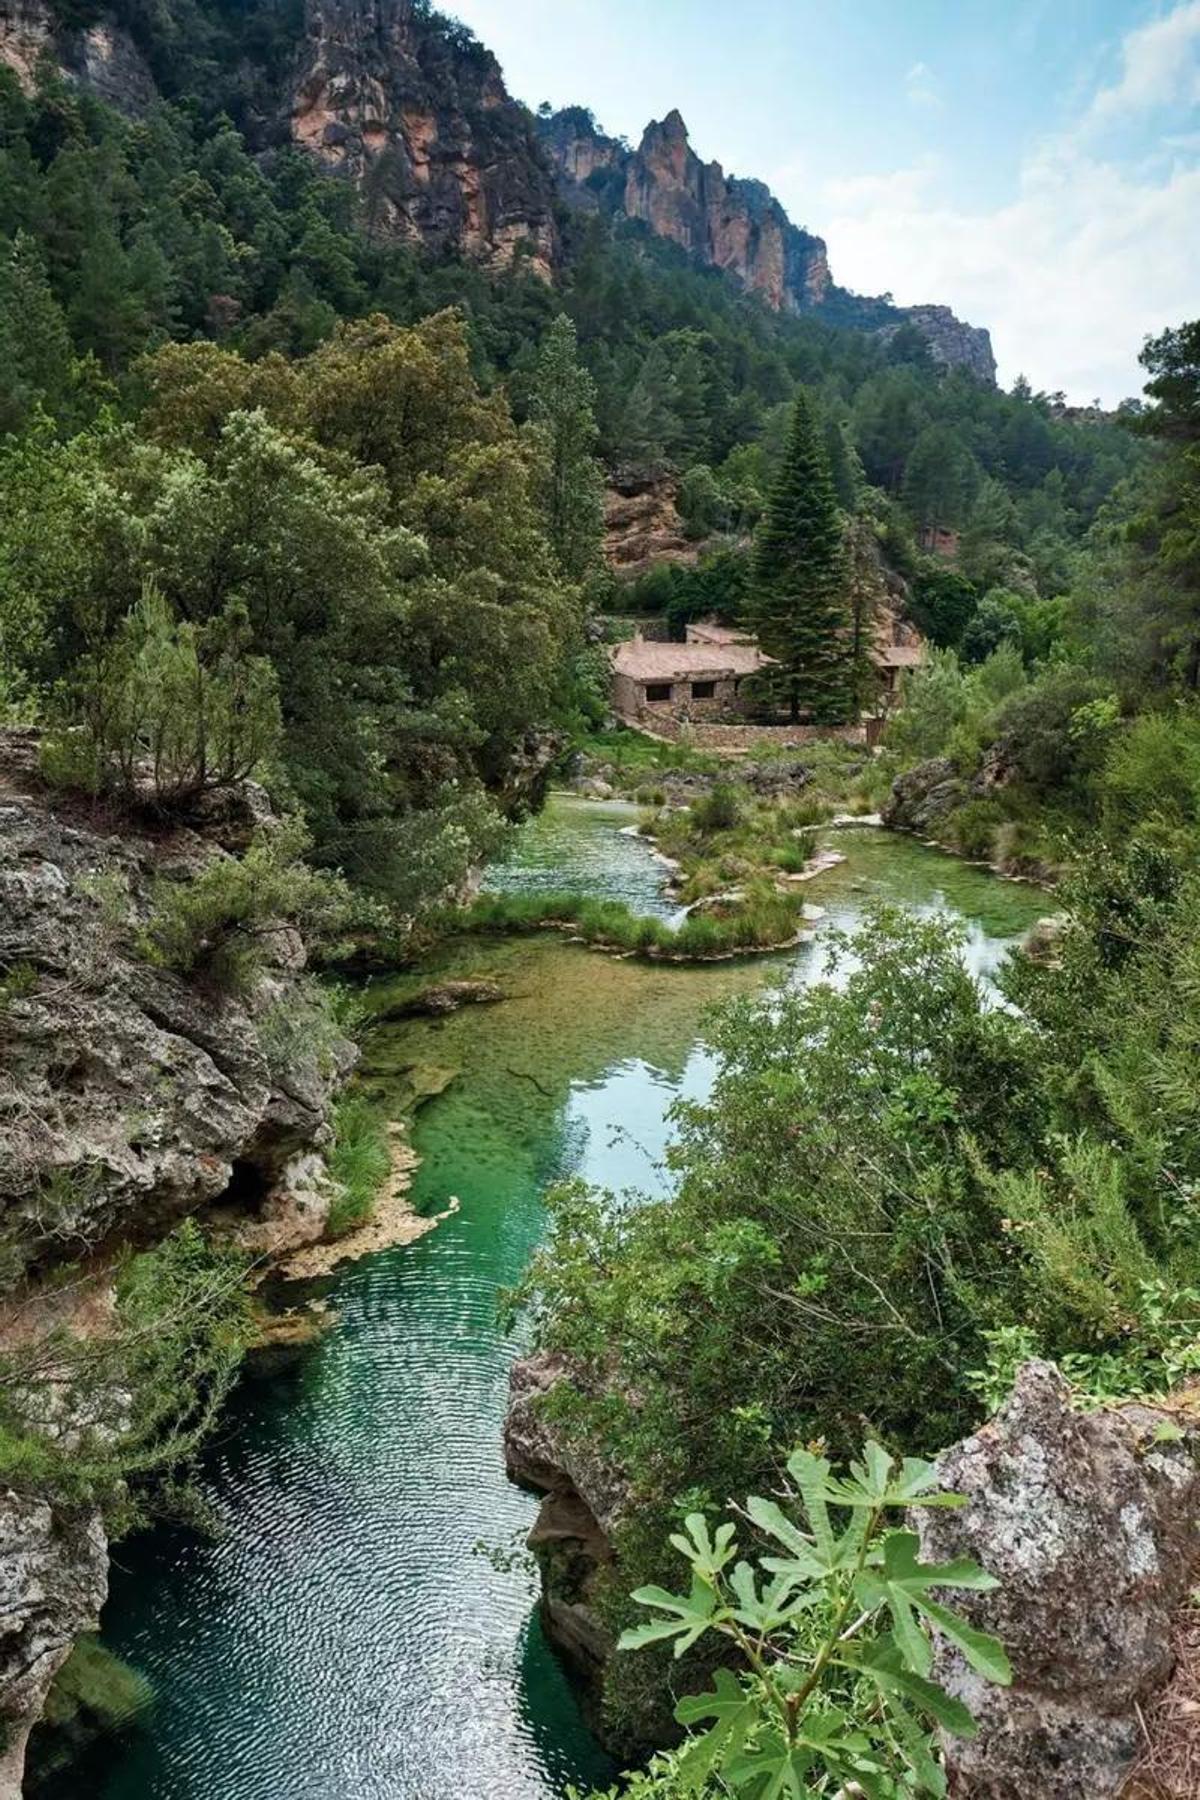 Una vista del paraje de El Parrizal (Beceite), con el río Matarraña y sus aguas color turquesa rodeado por bosques y formaciones rocosas